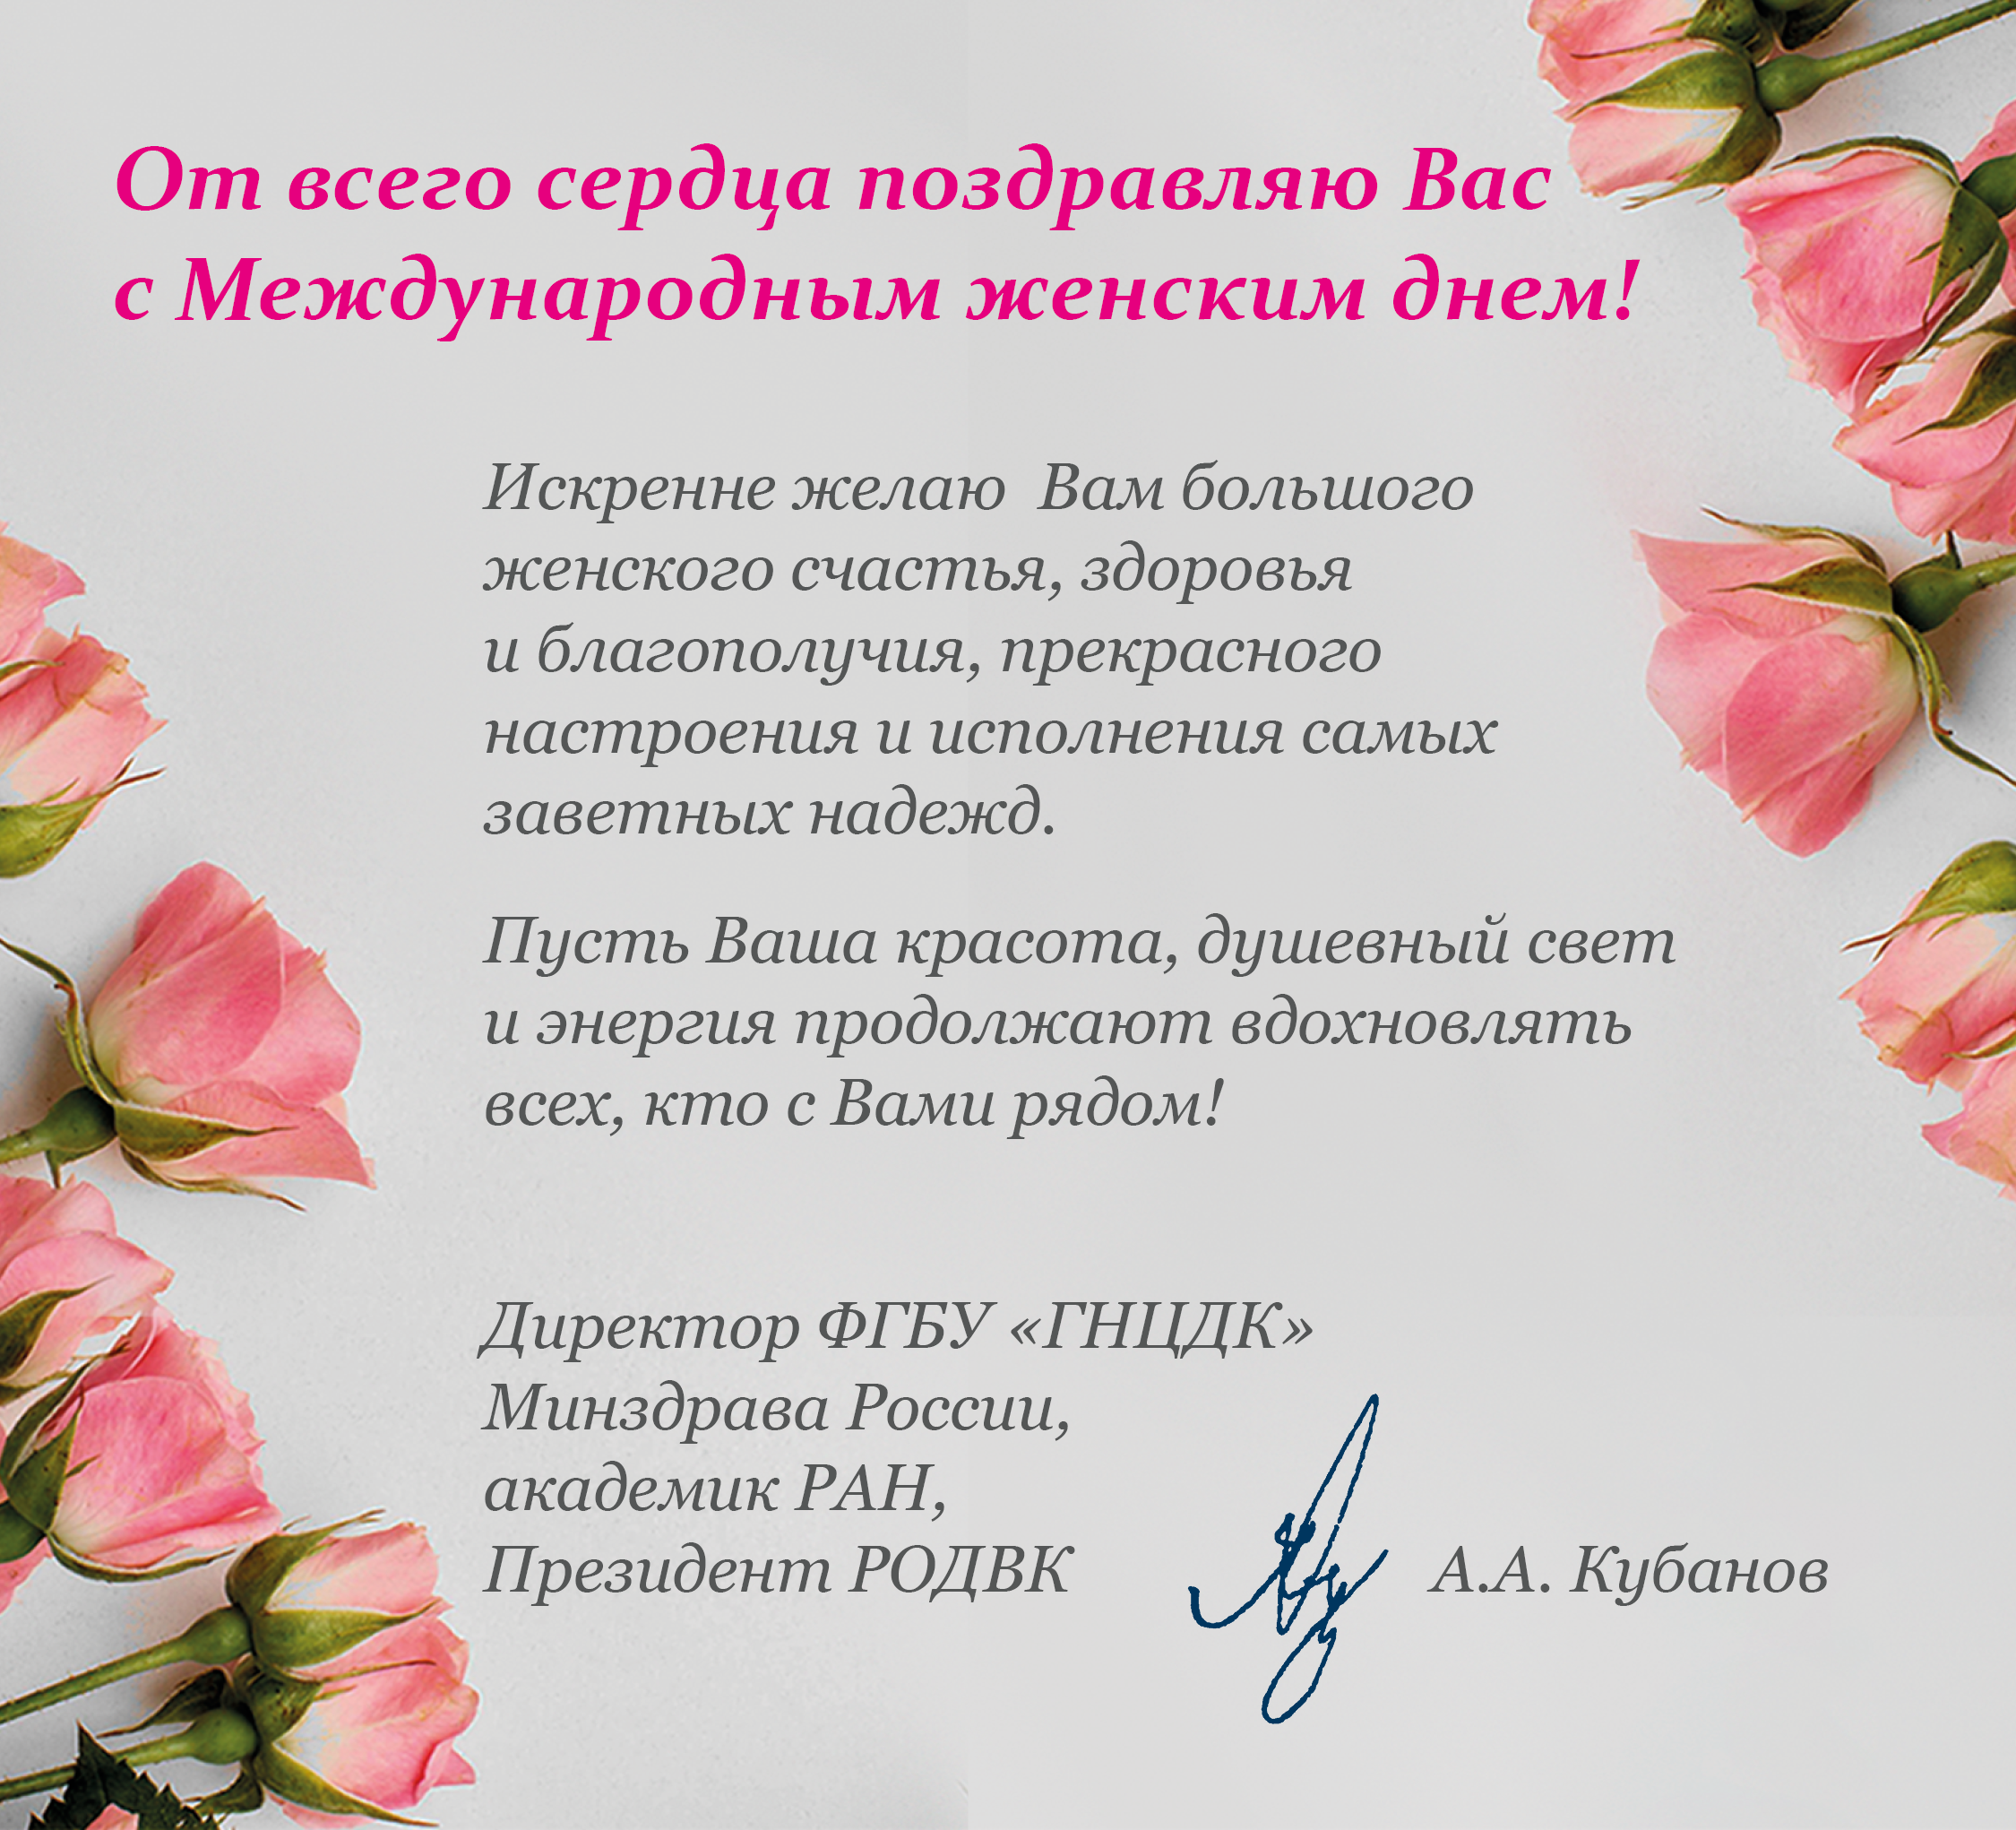 Поздравление с Международным женским днем от президента РОДВК  А.А. Кубанова